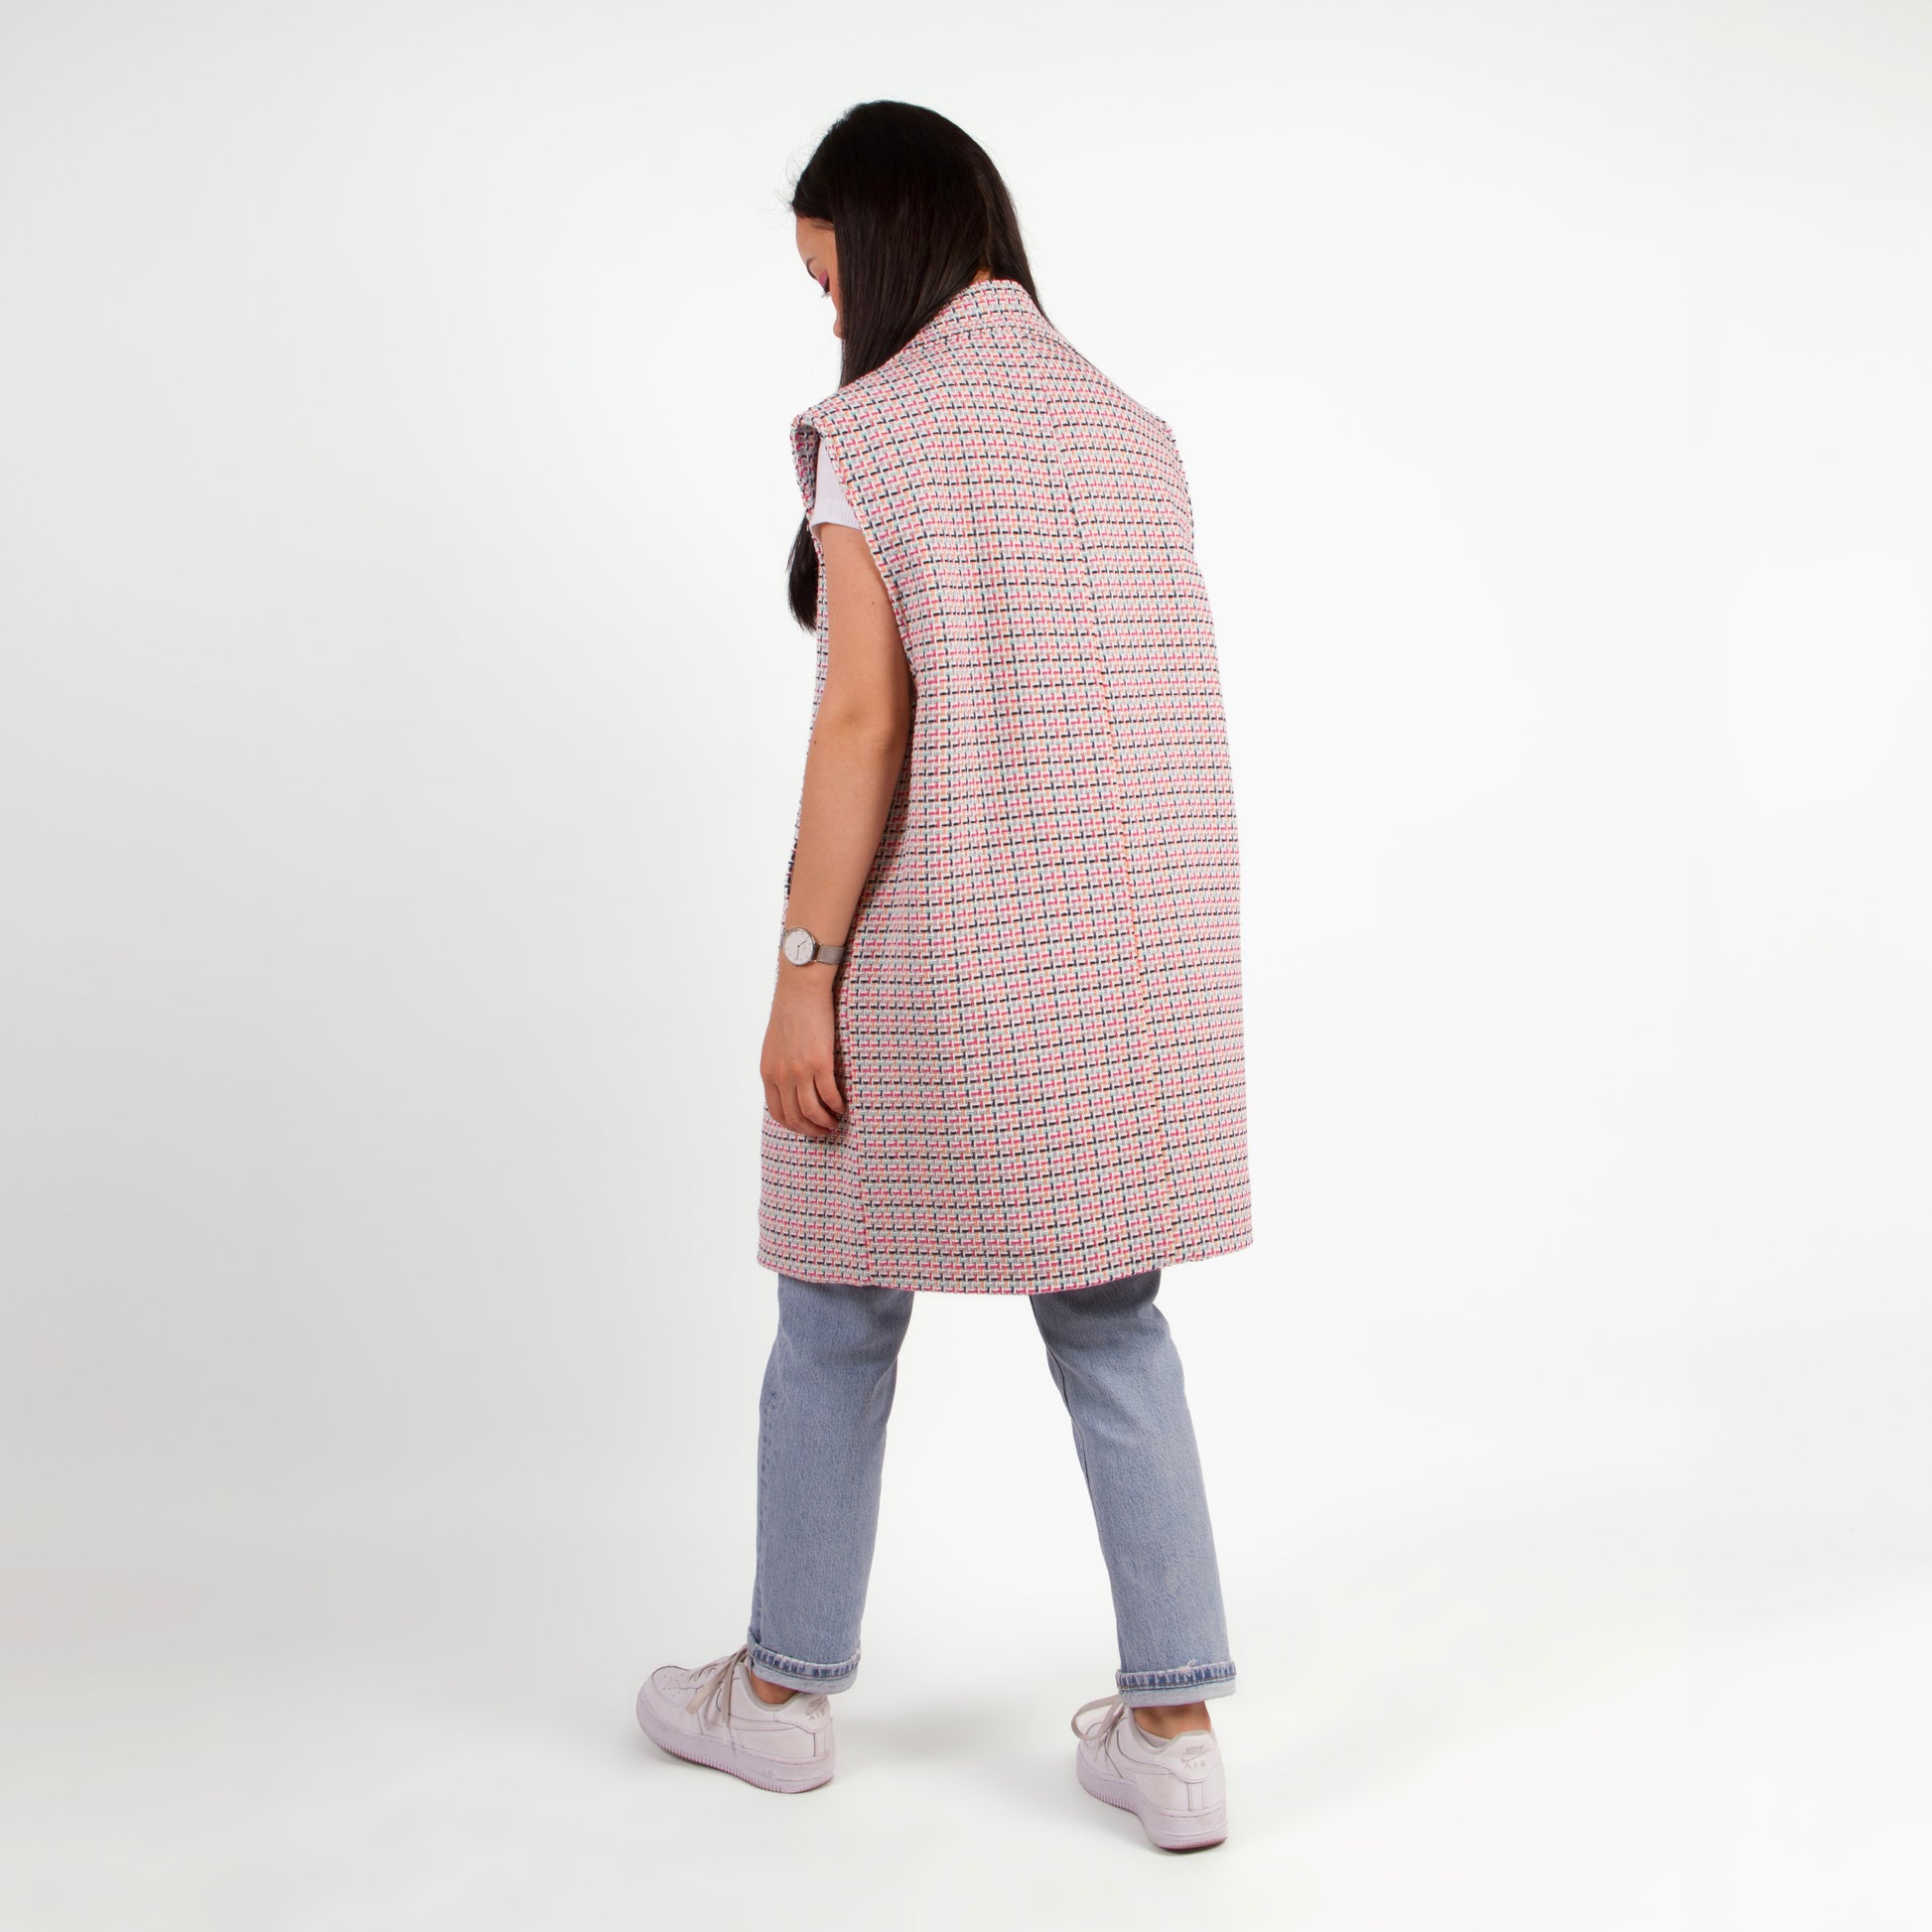 Lucewear: femme portant une veste sans manche en tweed coloré